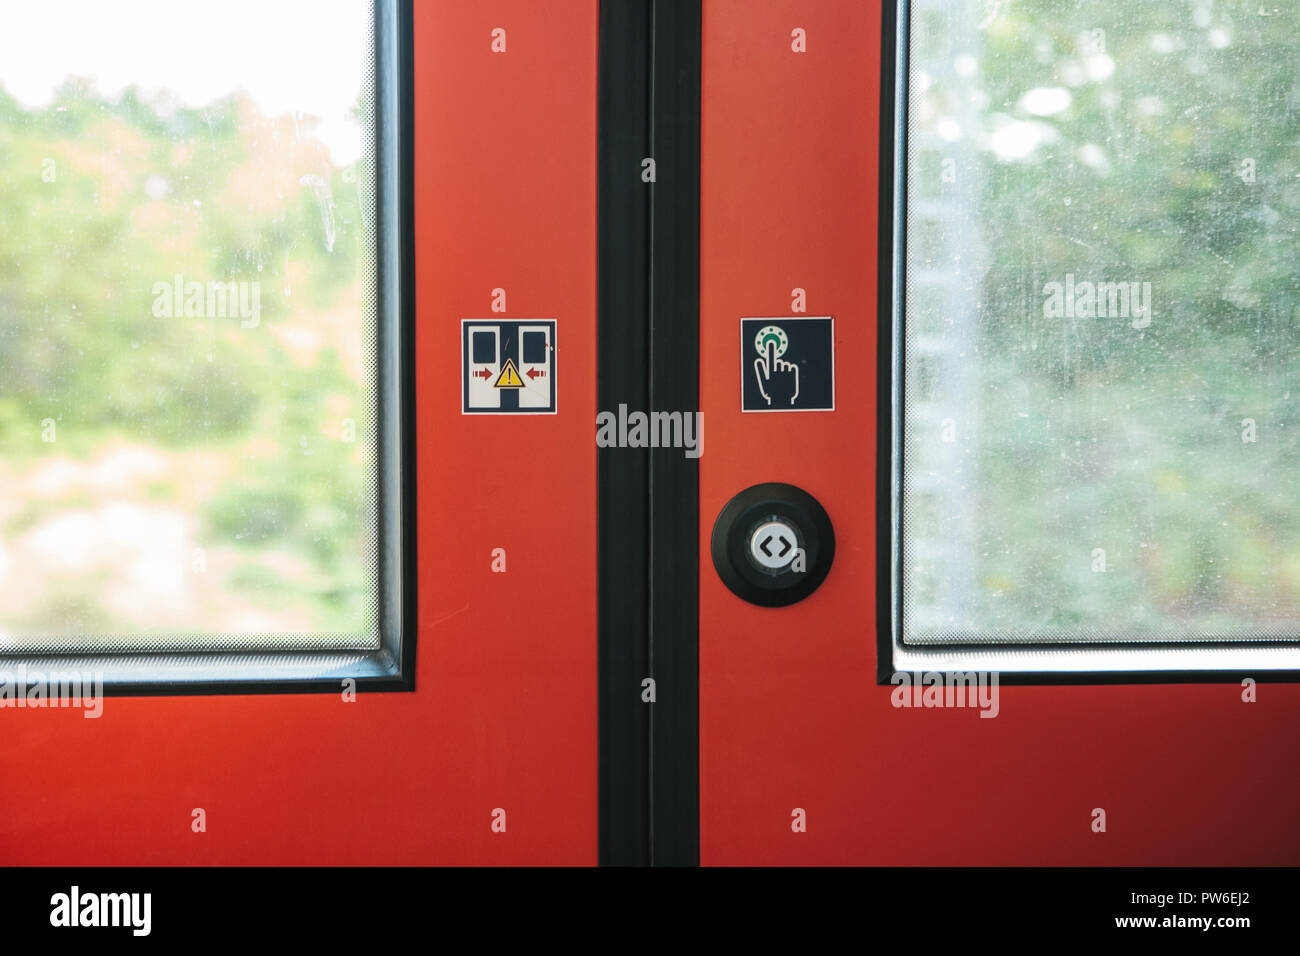 La porte de sortie du train, avec un bouton pour ouvrir automatiquement la porte à la demande lorsque le train s'arrête. Banque D'Images